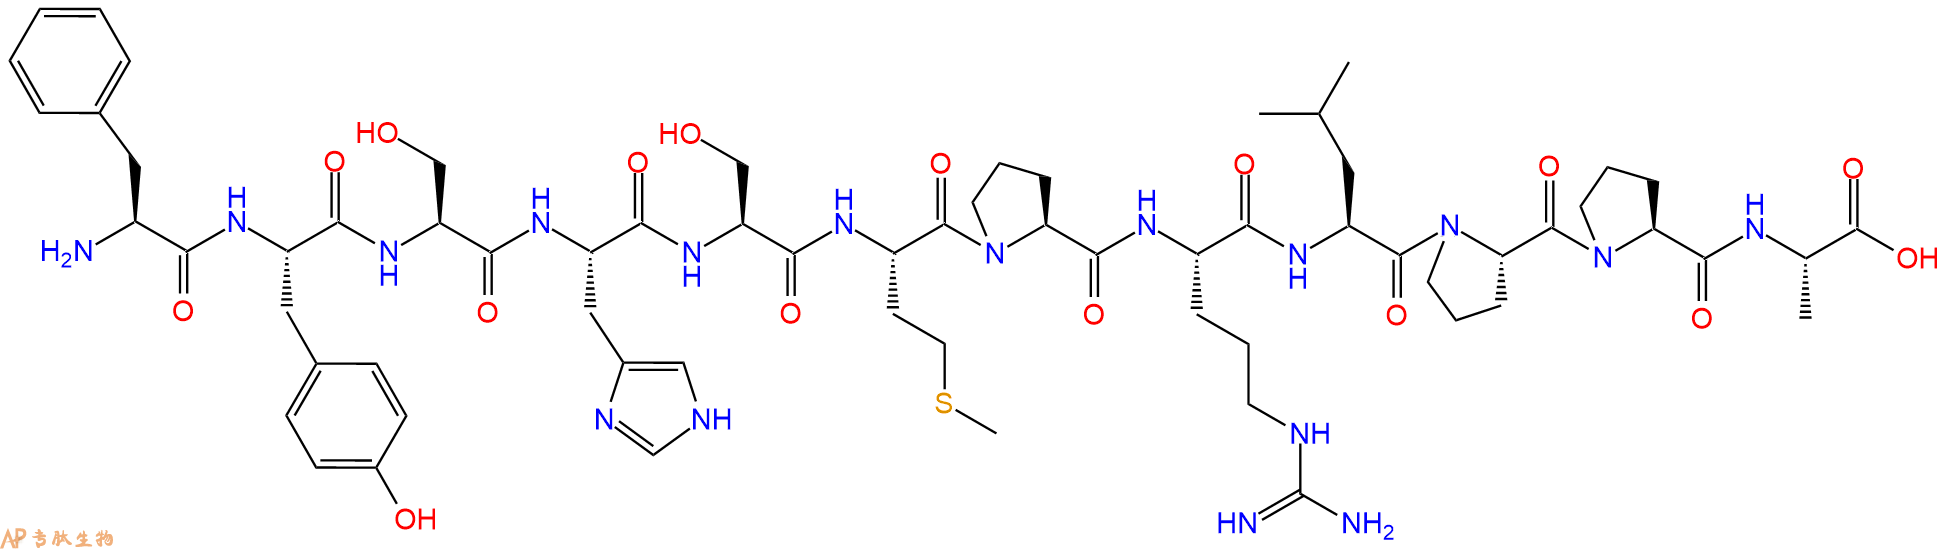 专肽生物产品H2N-Phe-Tyr-Ser-His-Ser-Met-Pro-Arg-Leu-Pro-Pro-Al